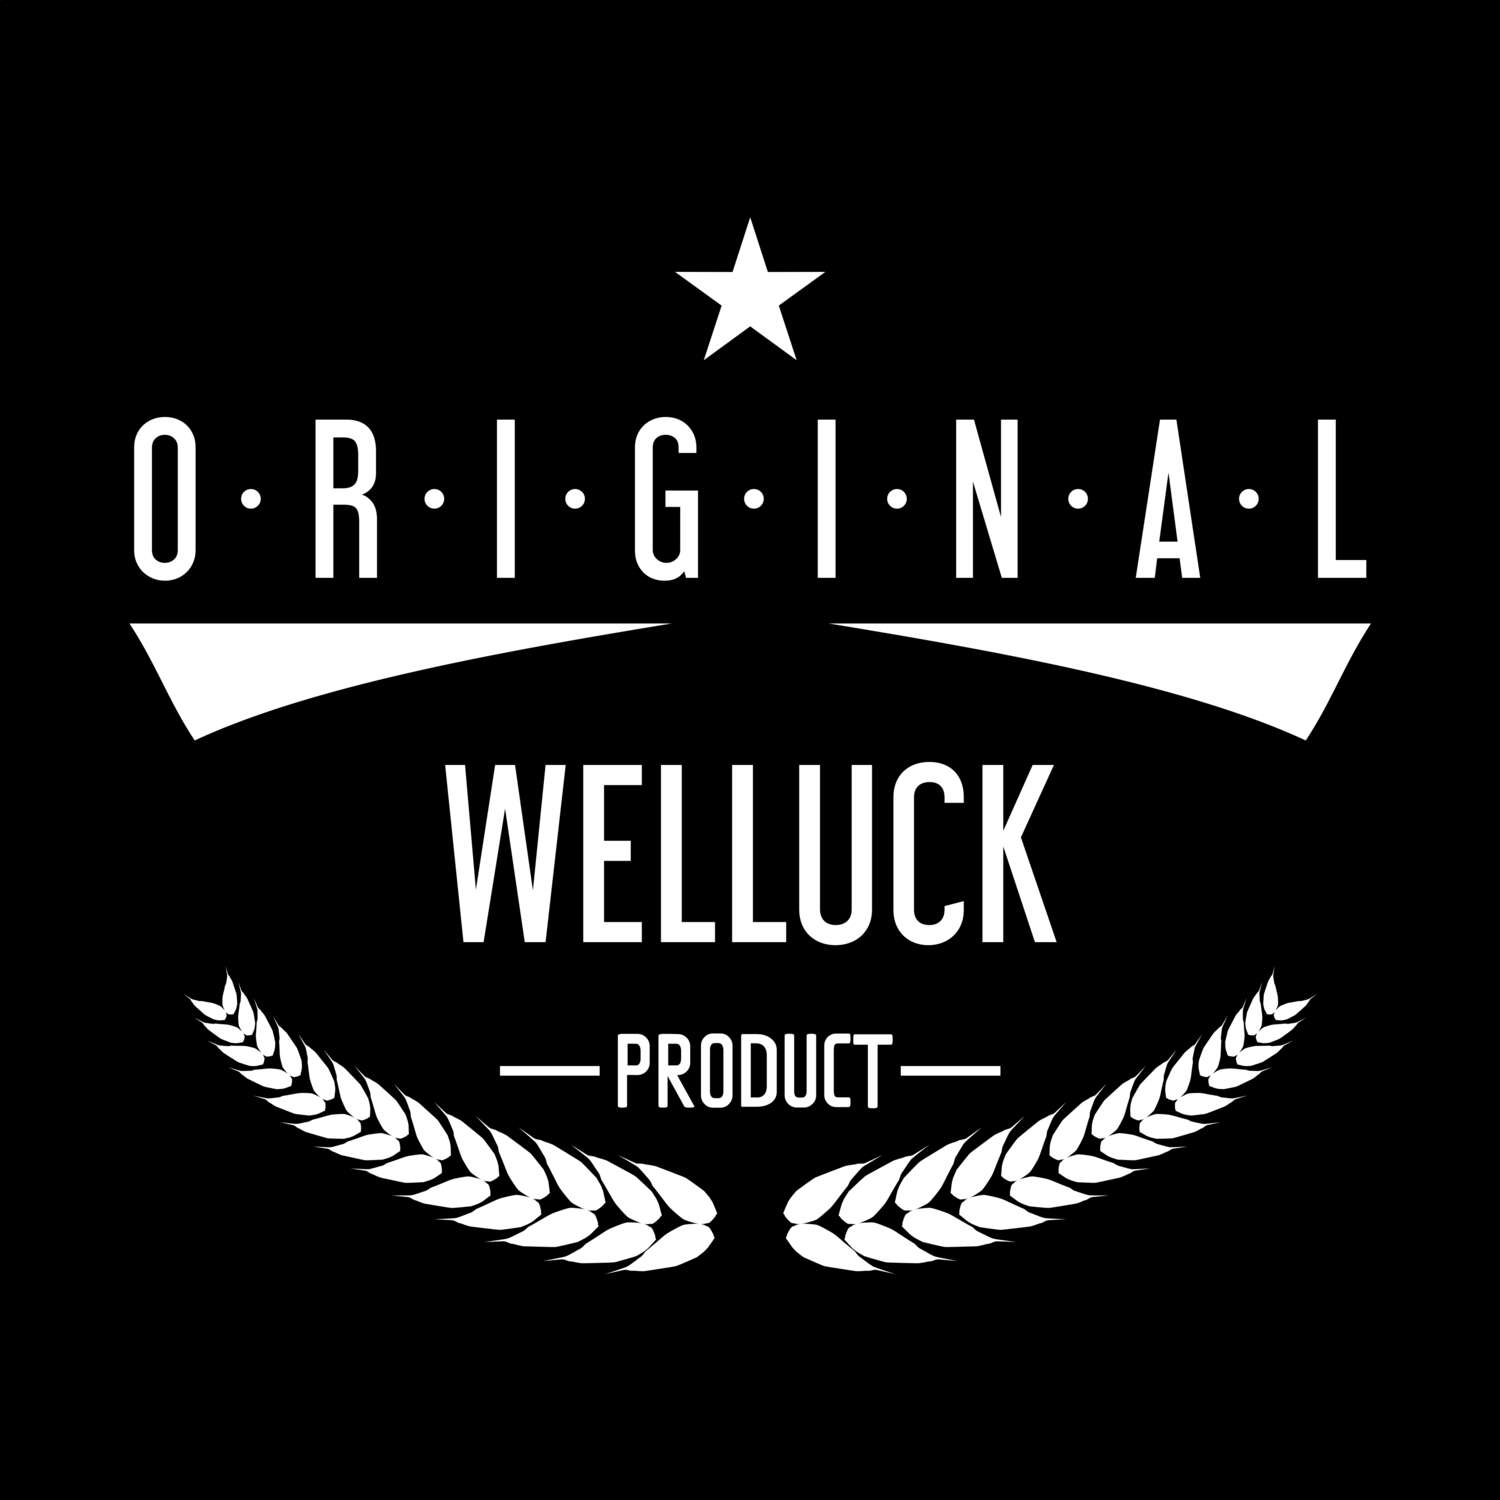 Welluck T-Shirt »Original Product«